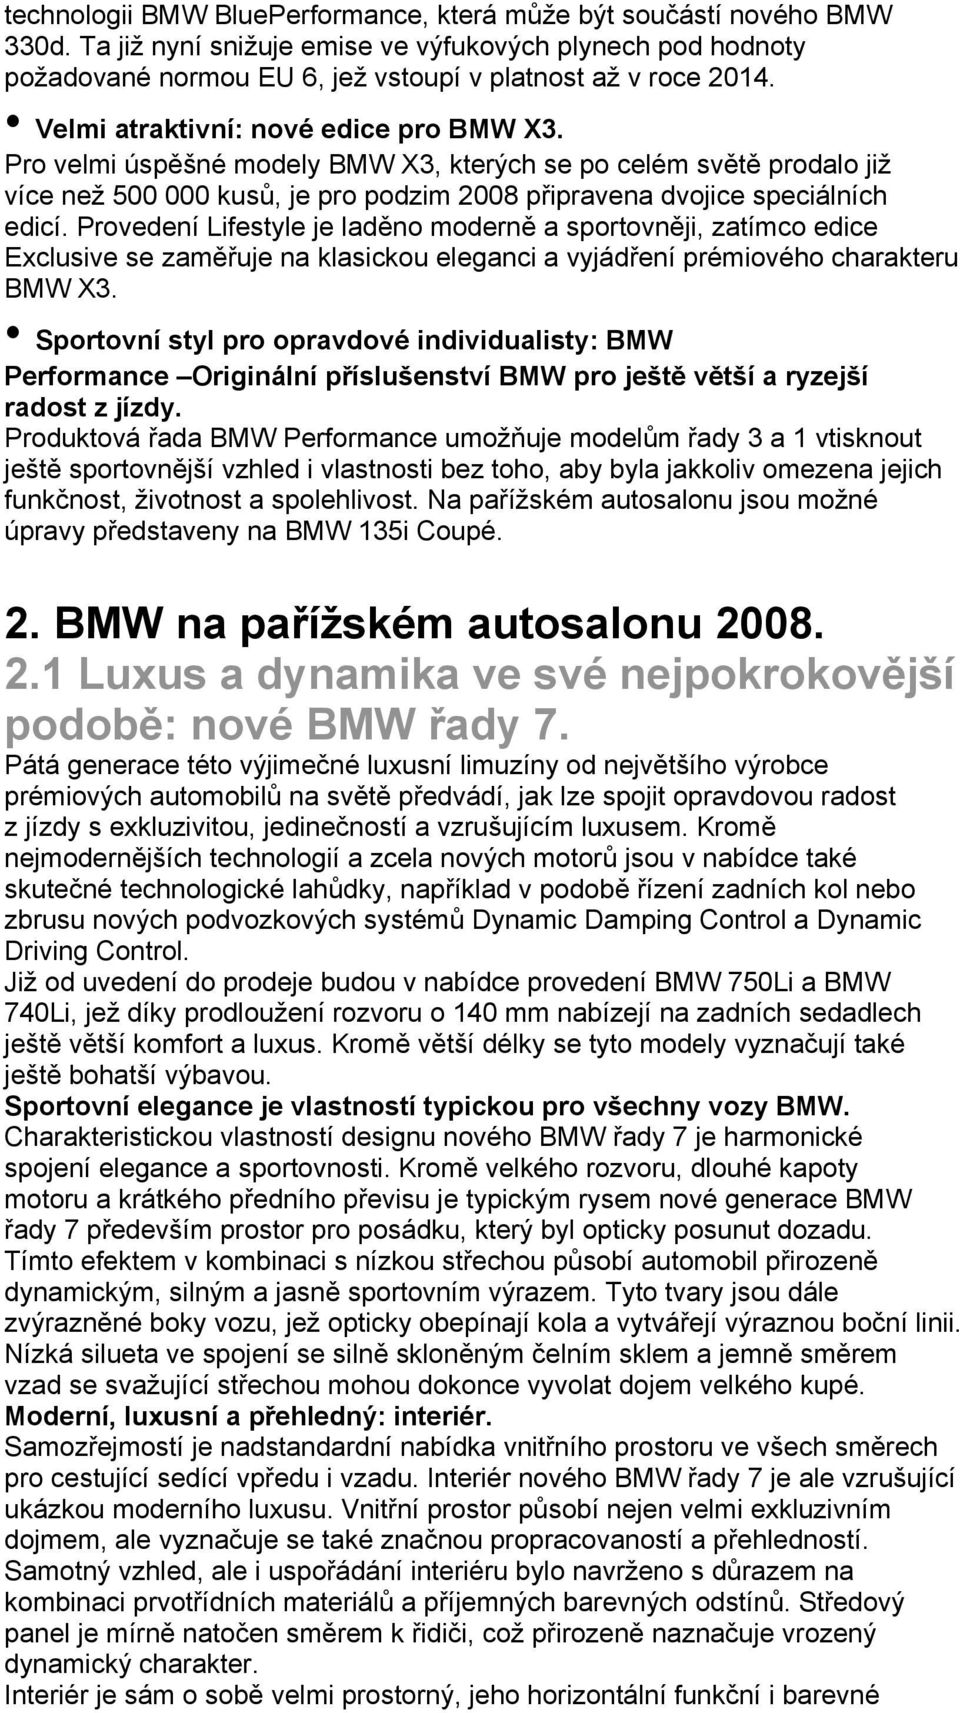 Provedení Lifestyle je laděno moderně a sportovněji, zatímco edice Exclusive se zaměřuje na klasickou eleganci a vyjádření prémiového charakteru BMW X3.